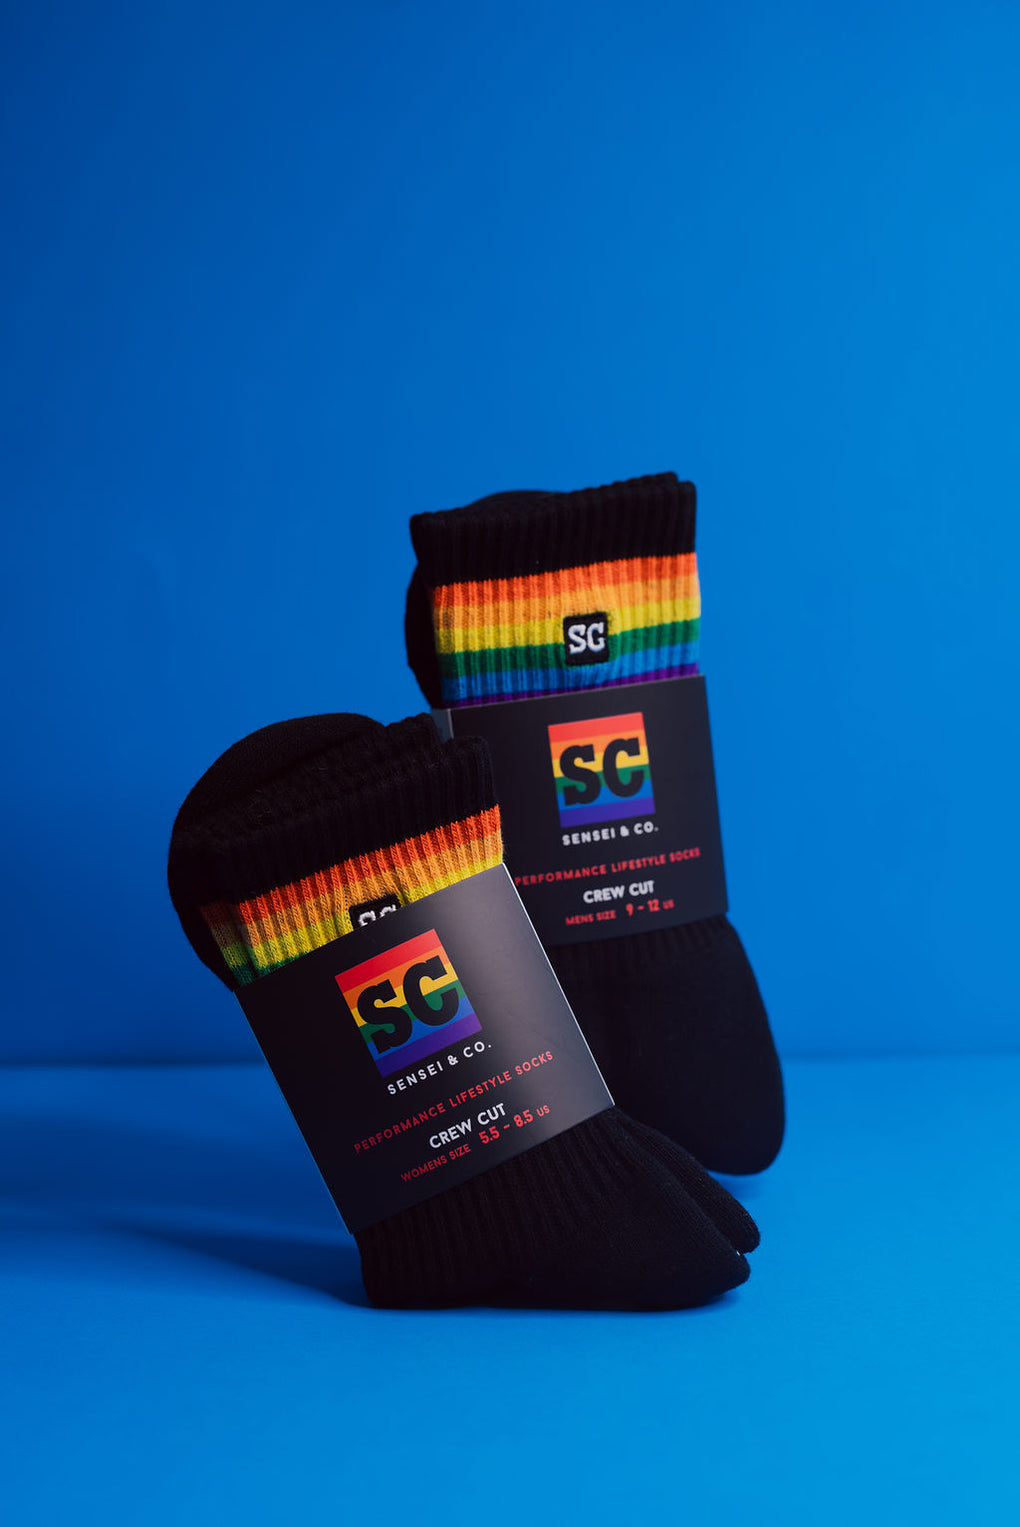 Sensei & Co. Pride Socks - LIMITED EDITION